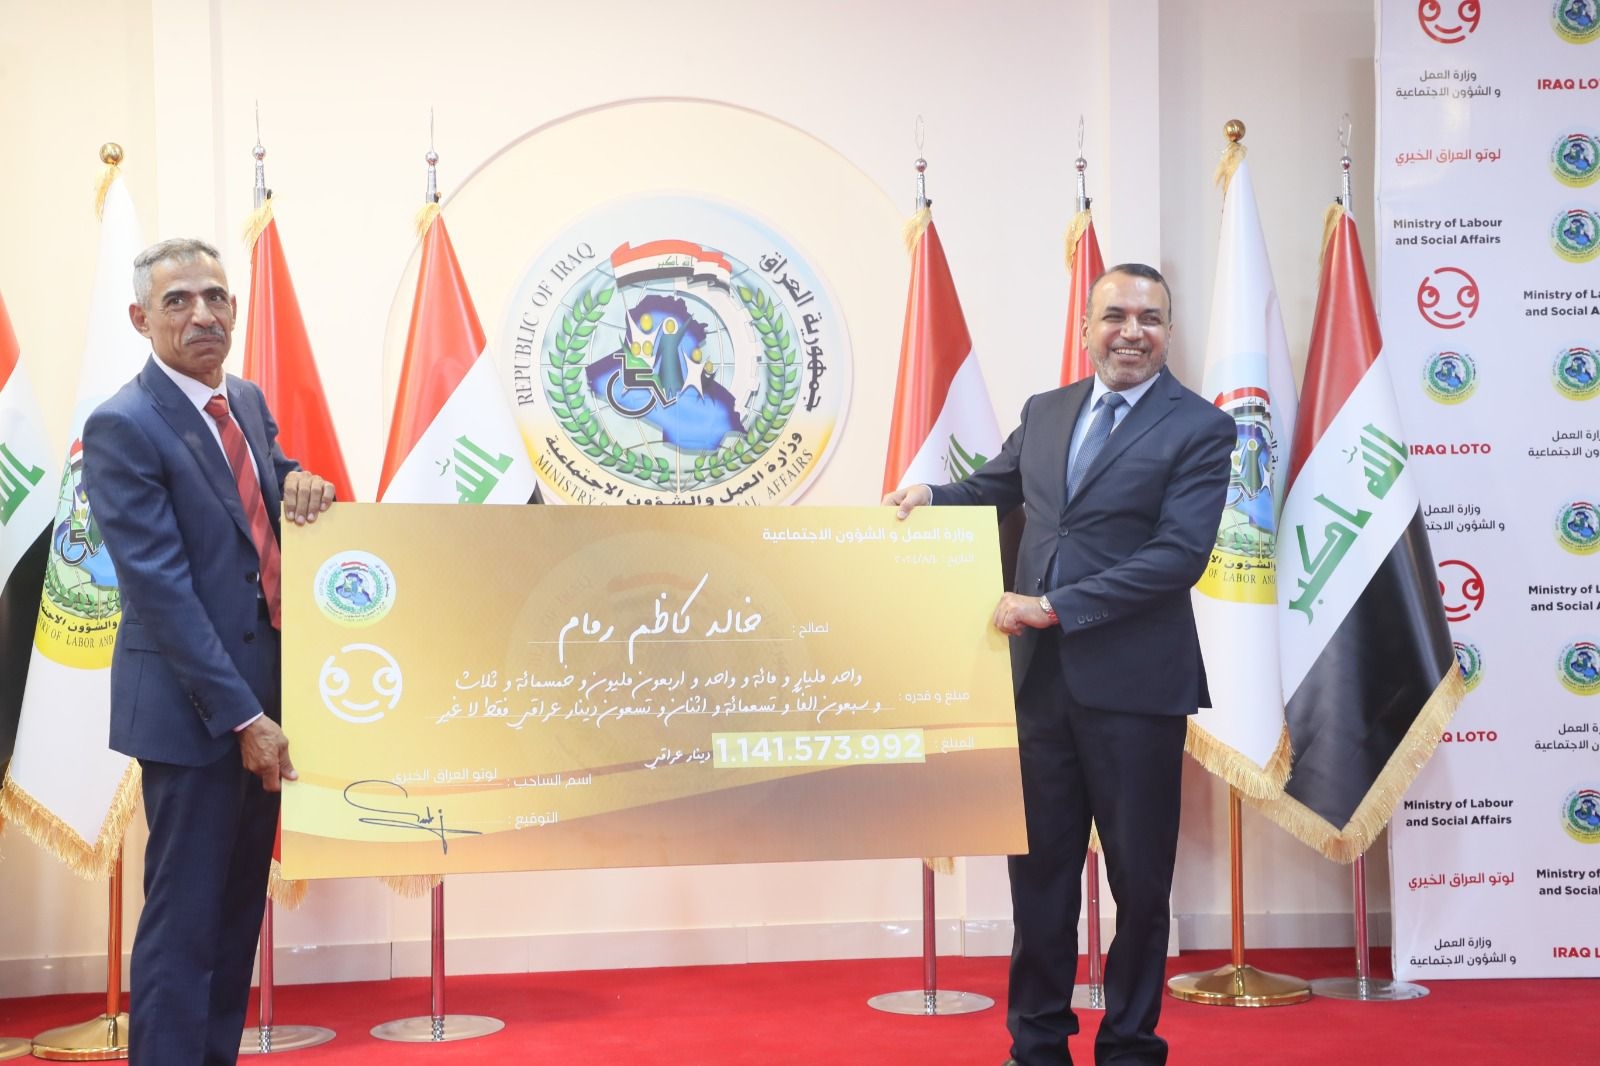 وزير العمل يسلم مواطنا عراقيا اكثر من مليار دينار فاز بها ضمن يانصيب خيري